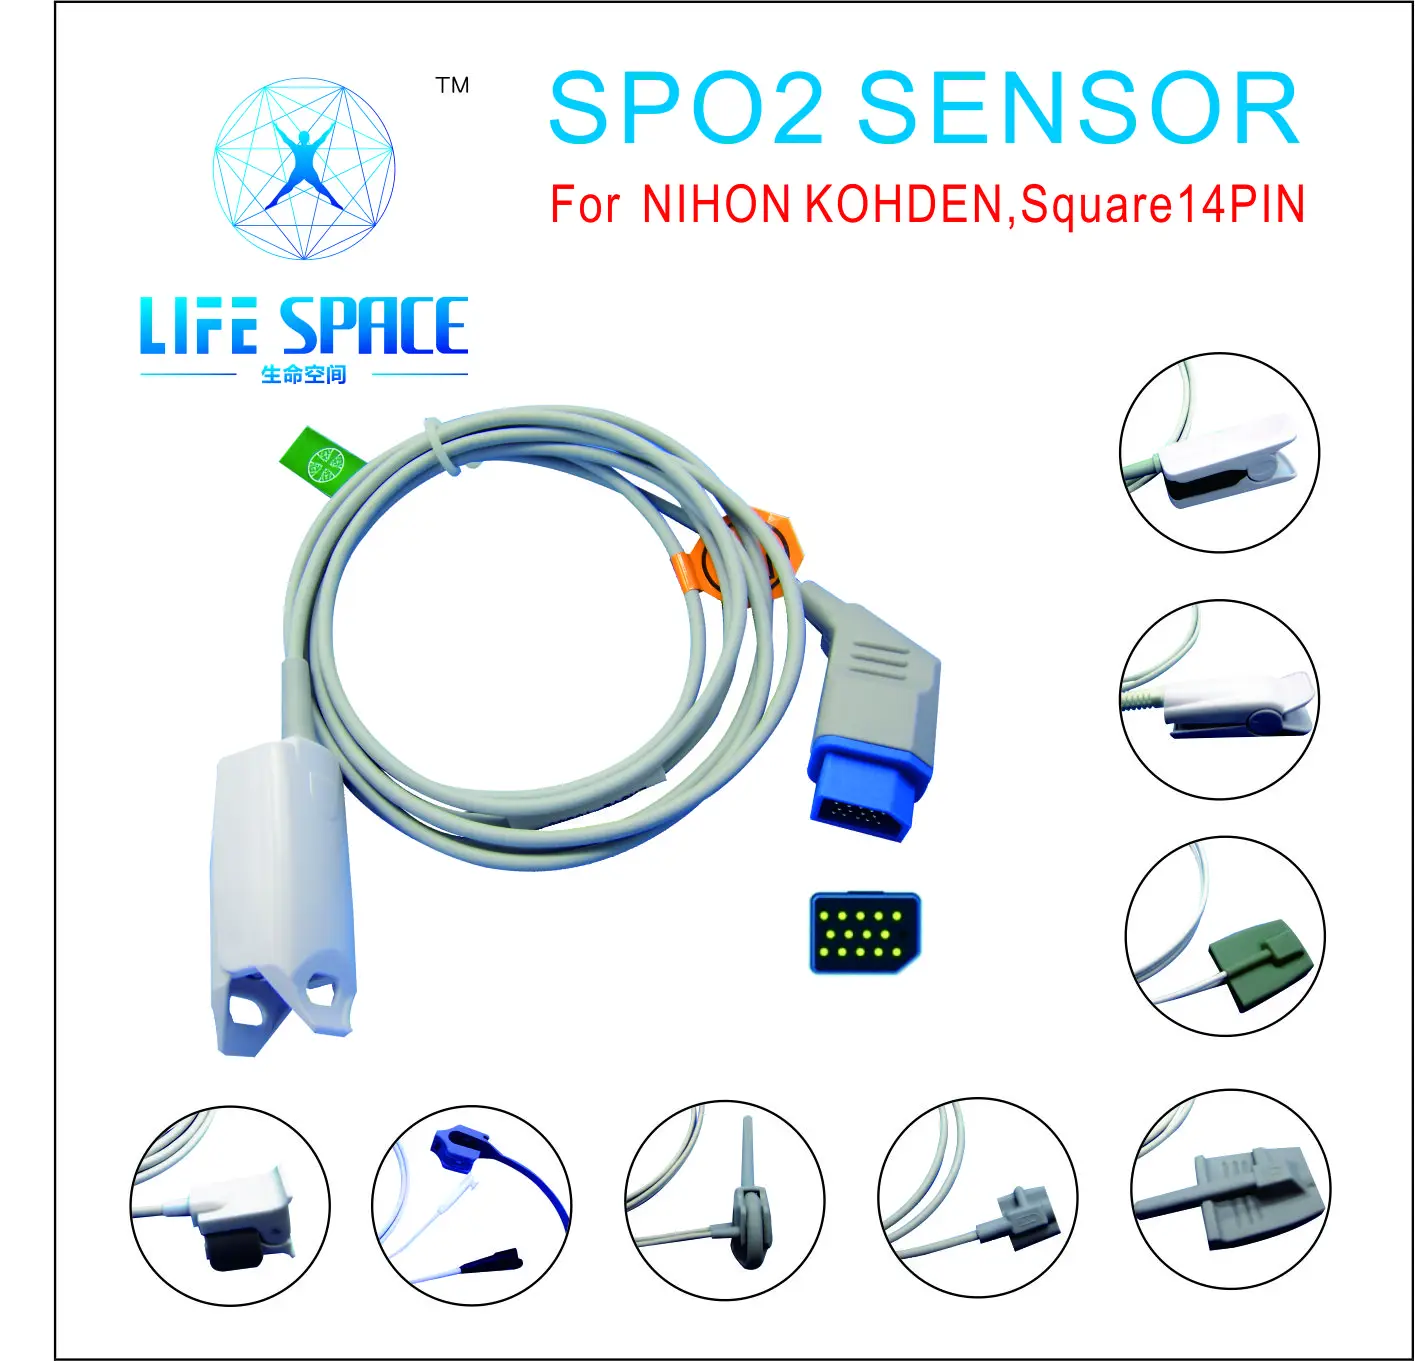 

Длинный кабель AWT на палец для взрослых, многоразовый кислородный датчик Spo2 для мониторинга пациента NIHON KOHDEN